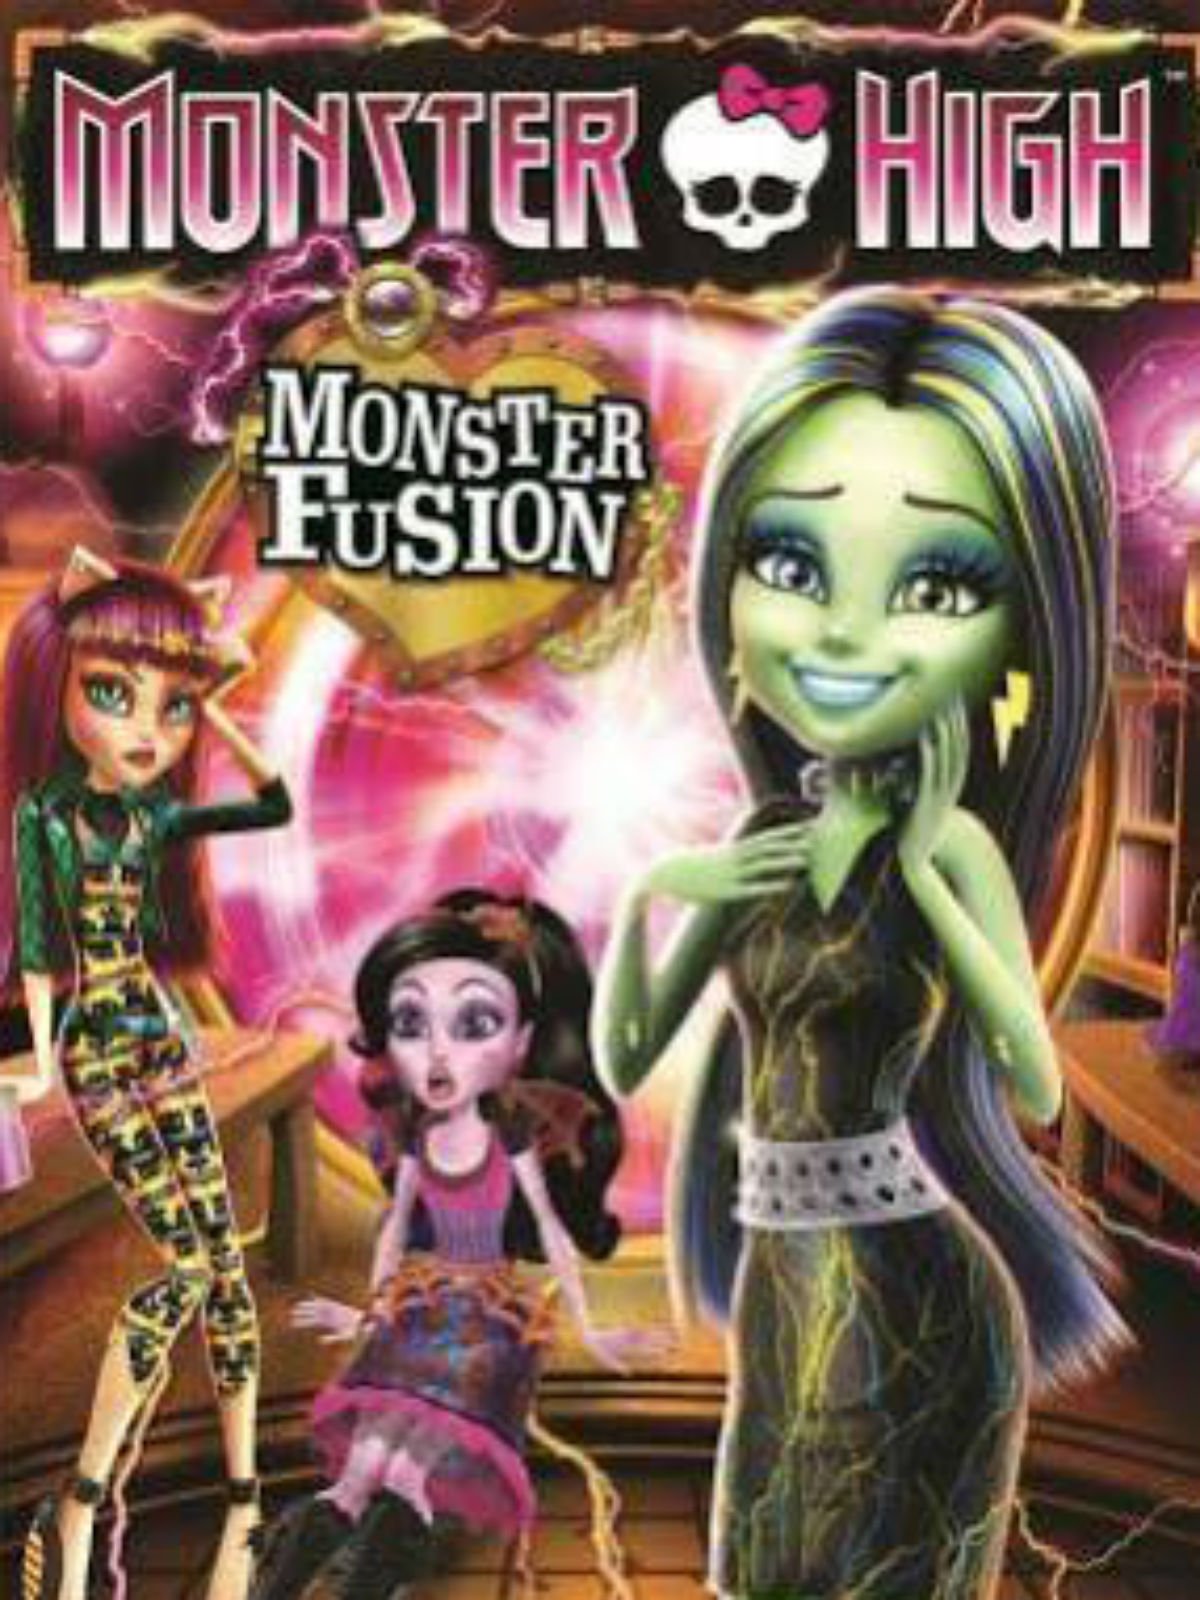 Bem-vindos ao Trailer Oficial do Filme de Monster High